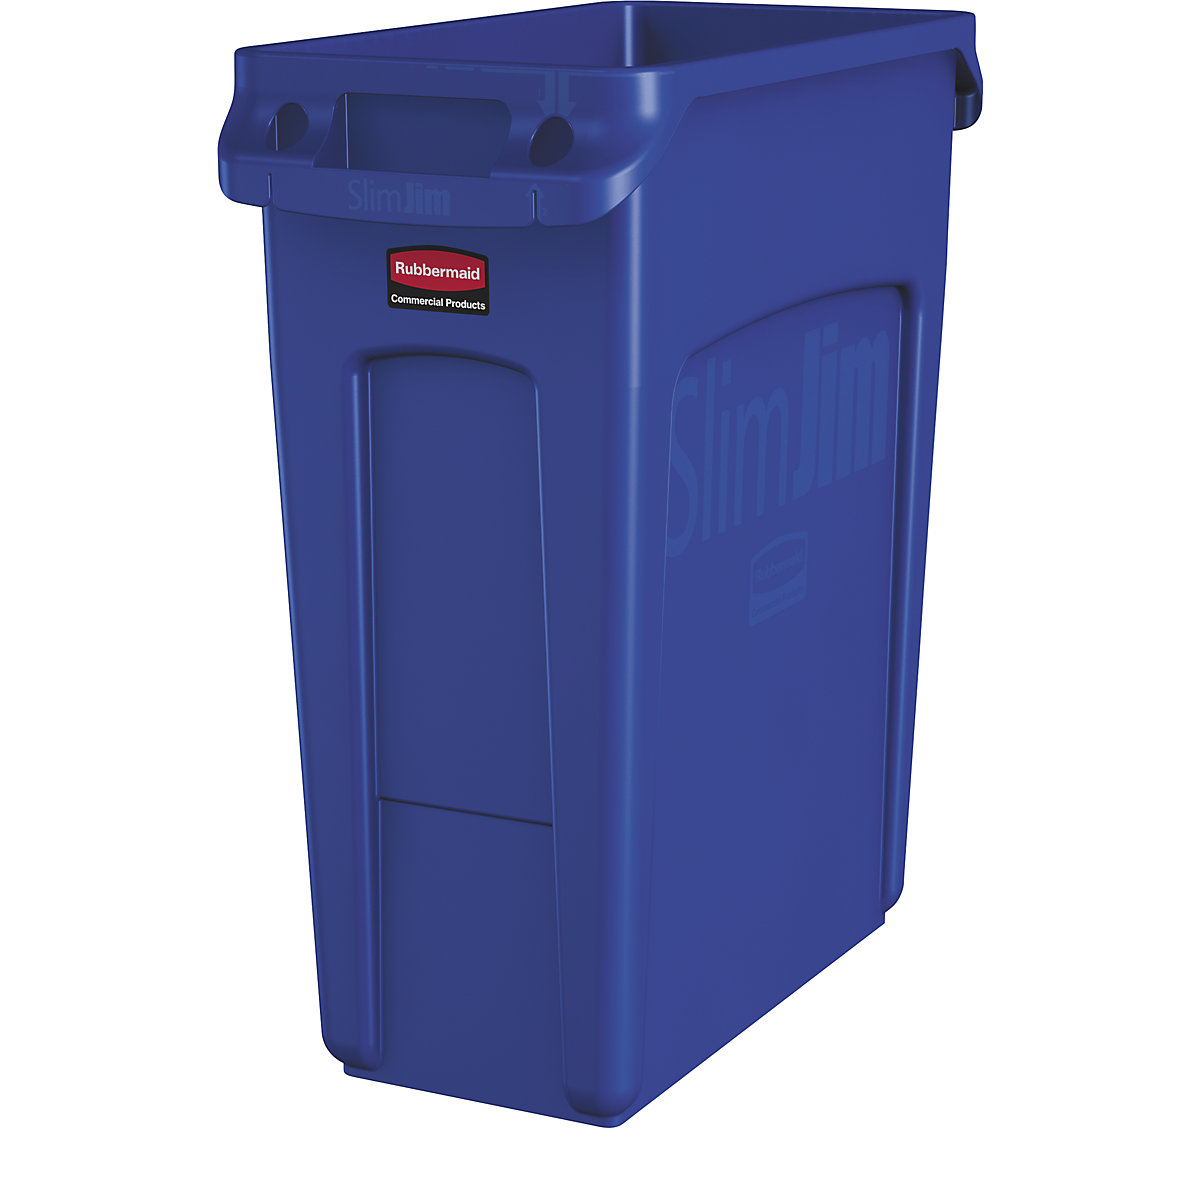 Collecteur de tri / poubelle SLIM JIM® – Rubbermaid, capacité 60 l, avec canaux d'aération, bleu, à partir de 10 pièces-9